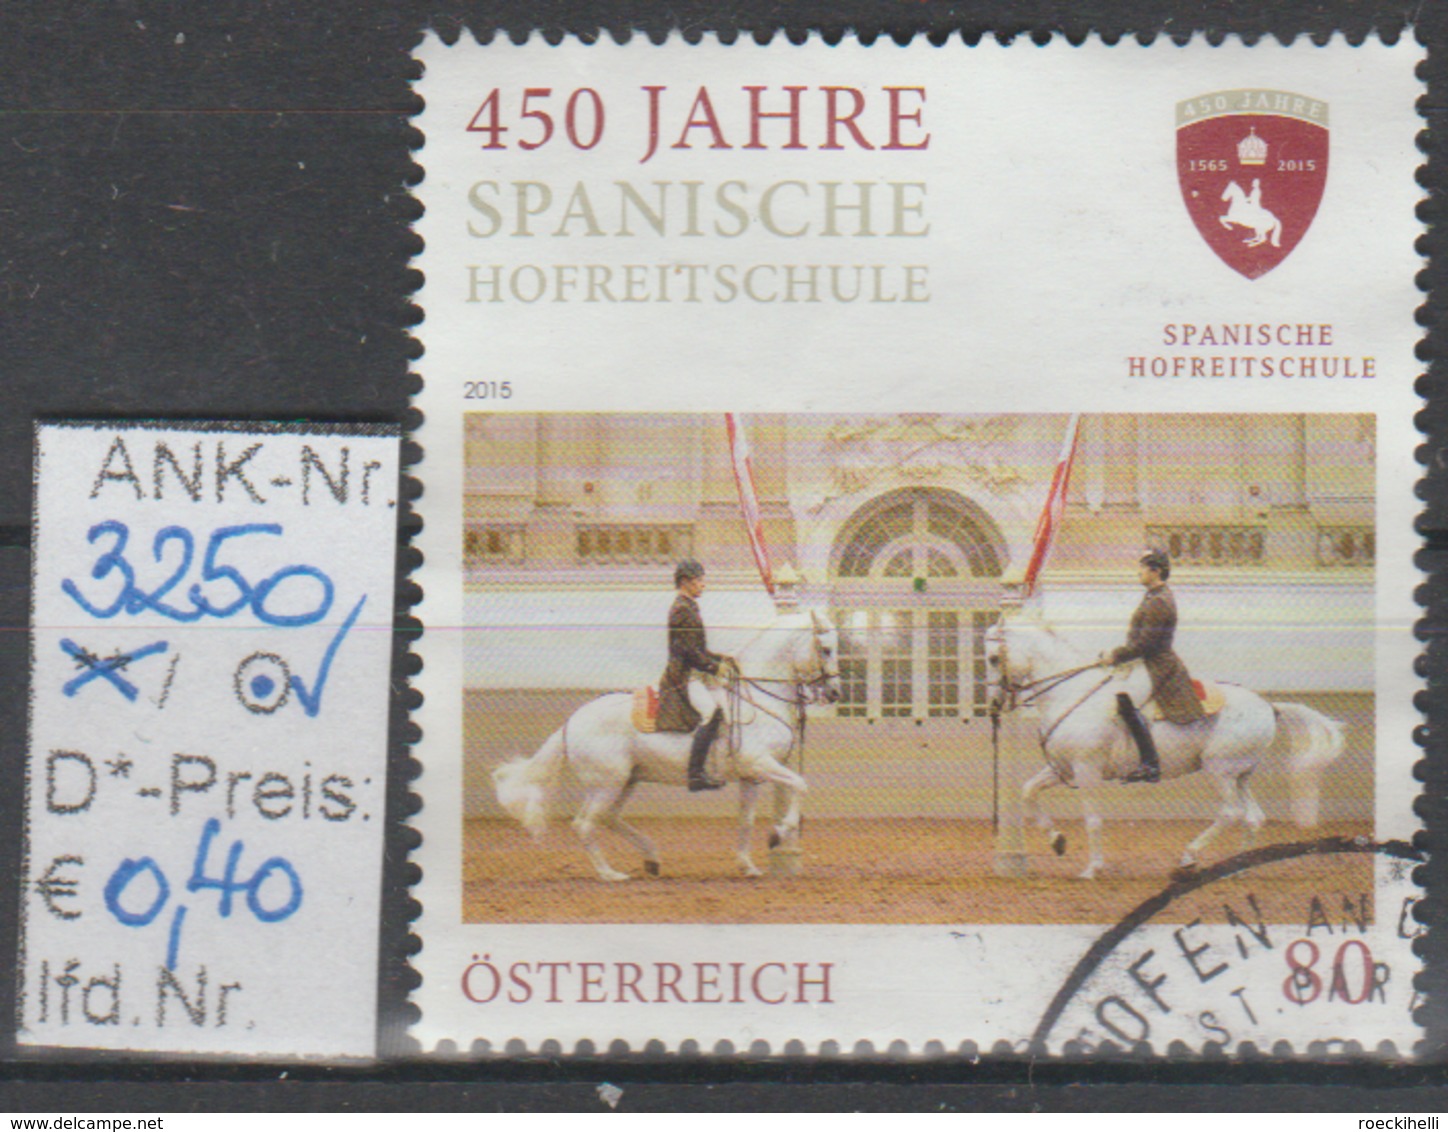 26.6.2015 - SM "450 Jahre Spanische Hofreitschule" -  O Gestempelt - Siehe Scan  (3250o) - Gebraucht